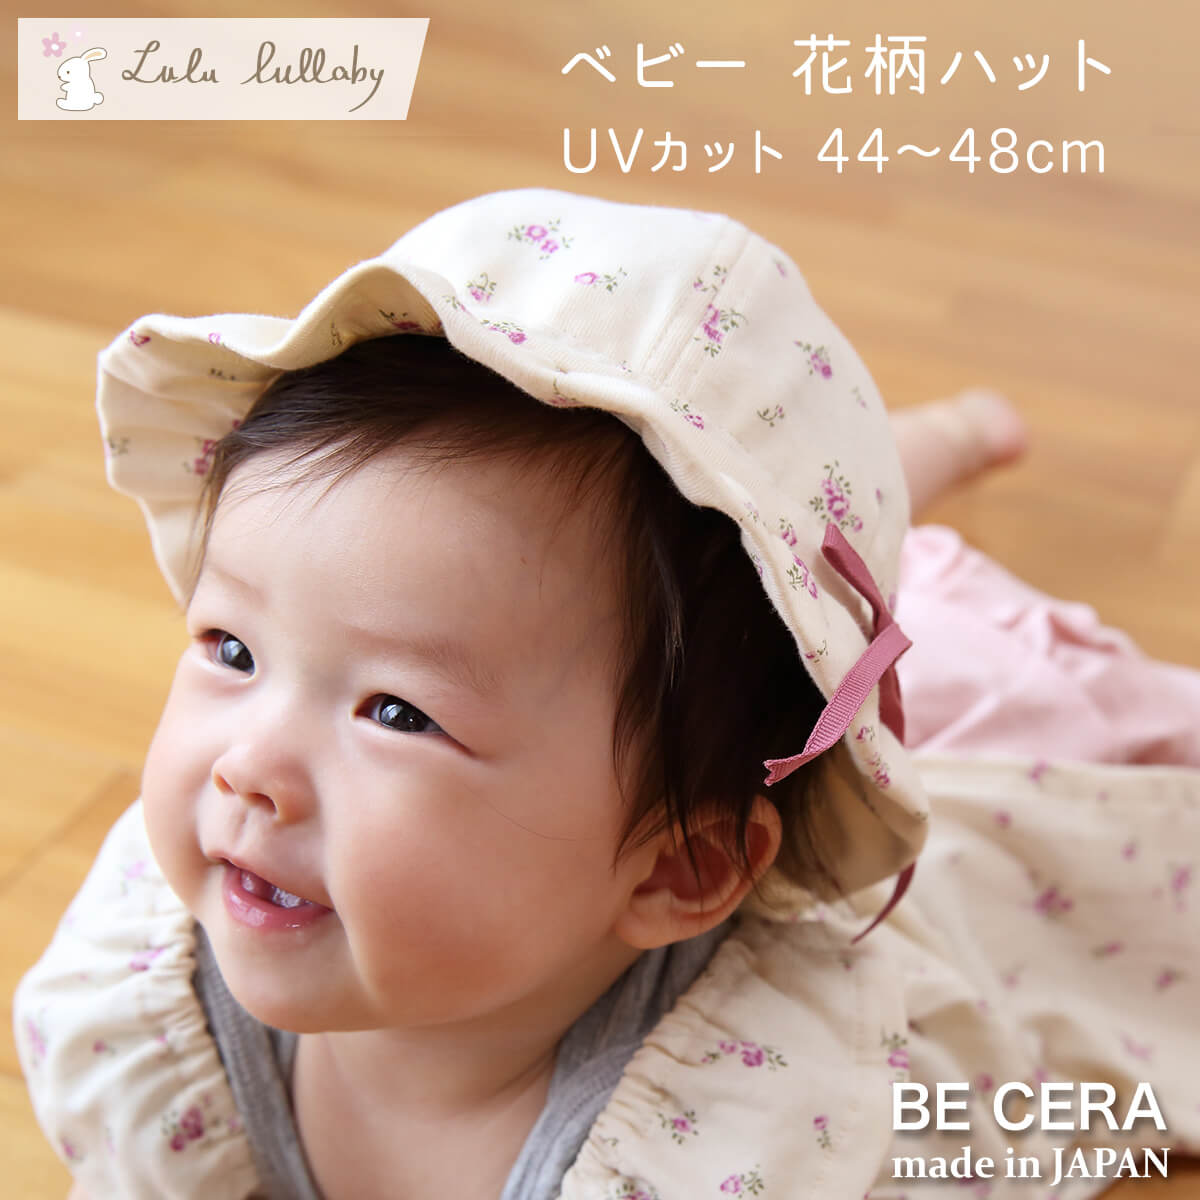 ベビー 女の子 帽子 Lulu lullaby 花柄 ハット キャップ UVカット 44cm 45cm 46cm 47cm 48cm サイズ調整できる 春 ぼうし 上品 ハット やわらか 日よけ 日除け 紫外線カット uv おでかけ ベビー 出産祝い おしゃれ かわいい 日本製 赤ちゃん